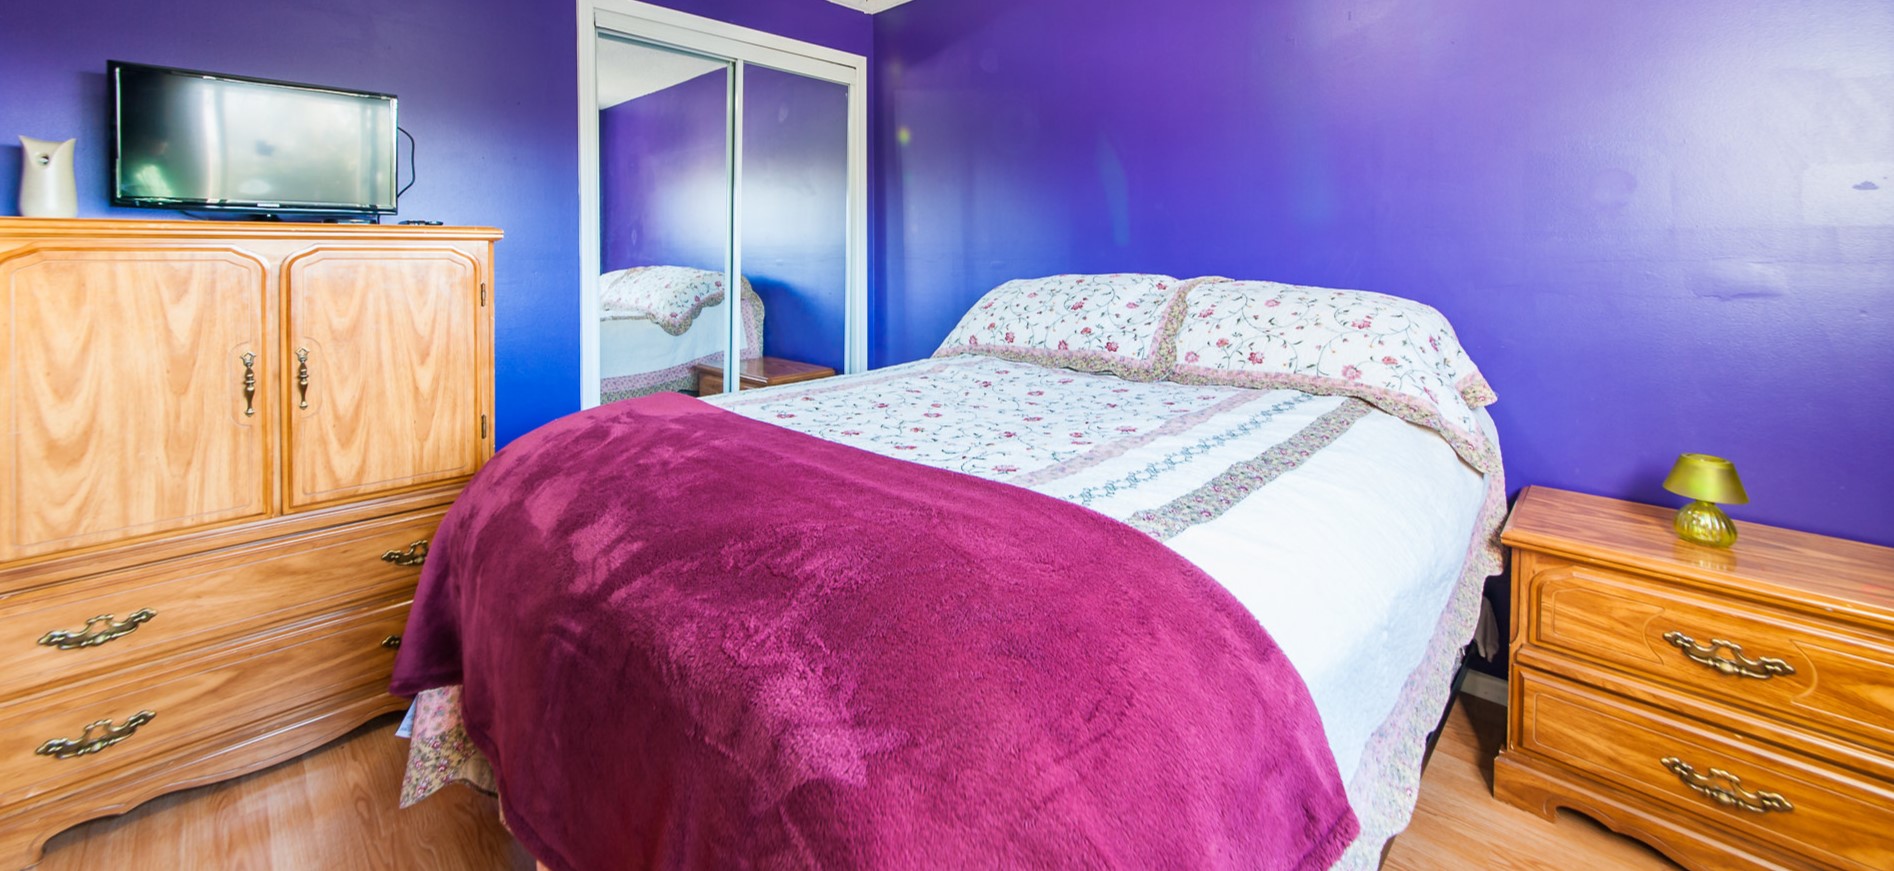 Комбинация синего и фиолетового в спальне